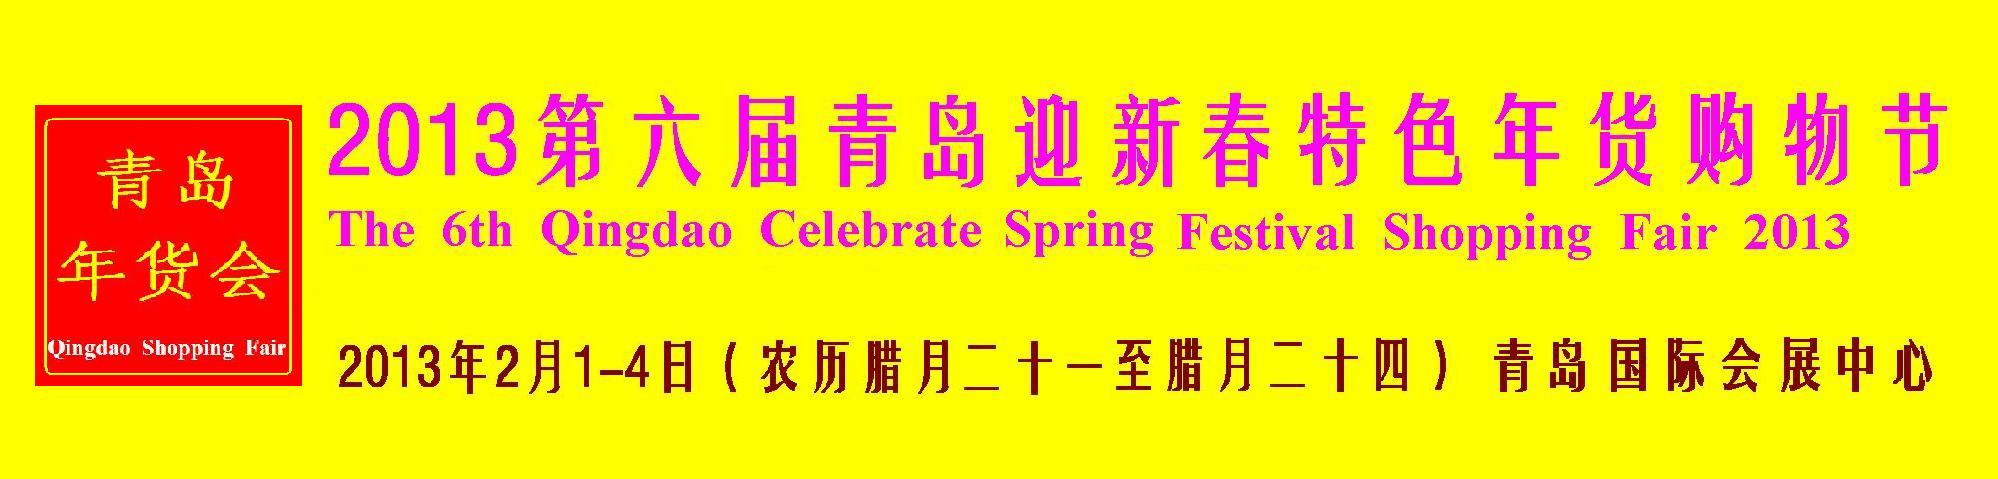 2013第六届青岛年货会（青岛）迎新春 特色年货 购物节